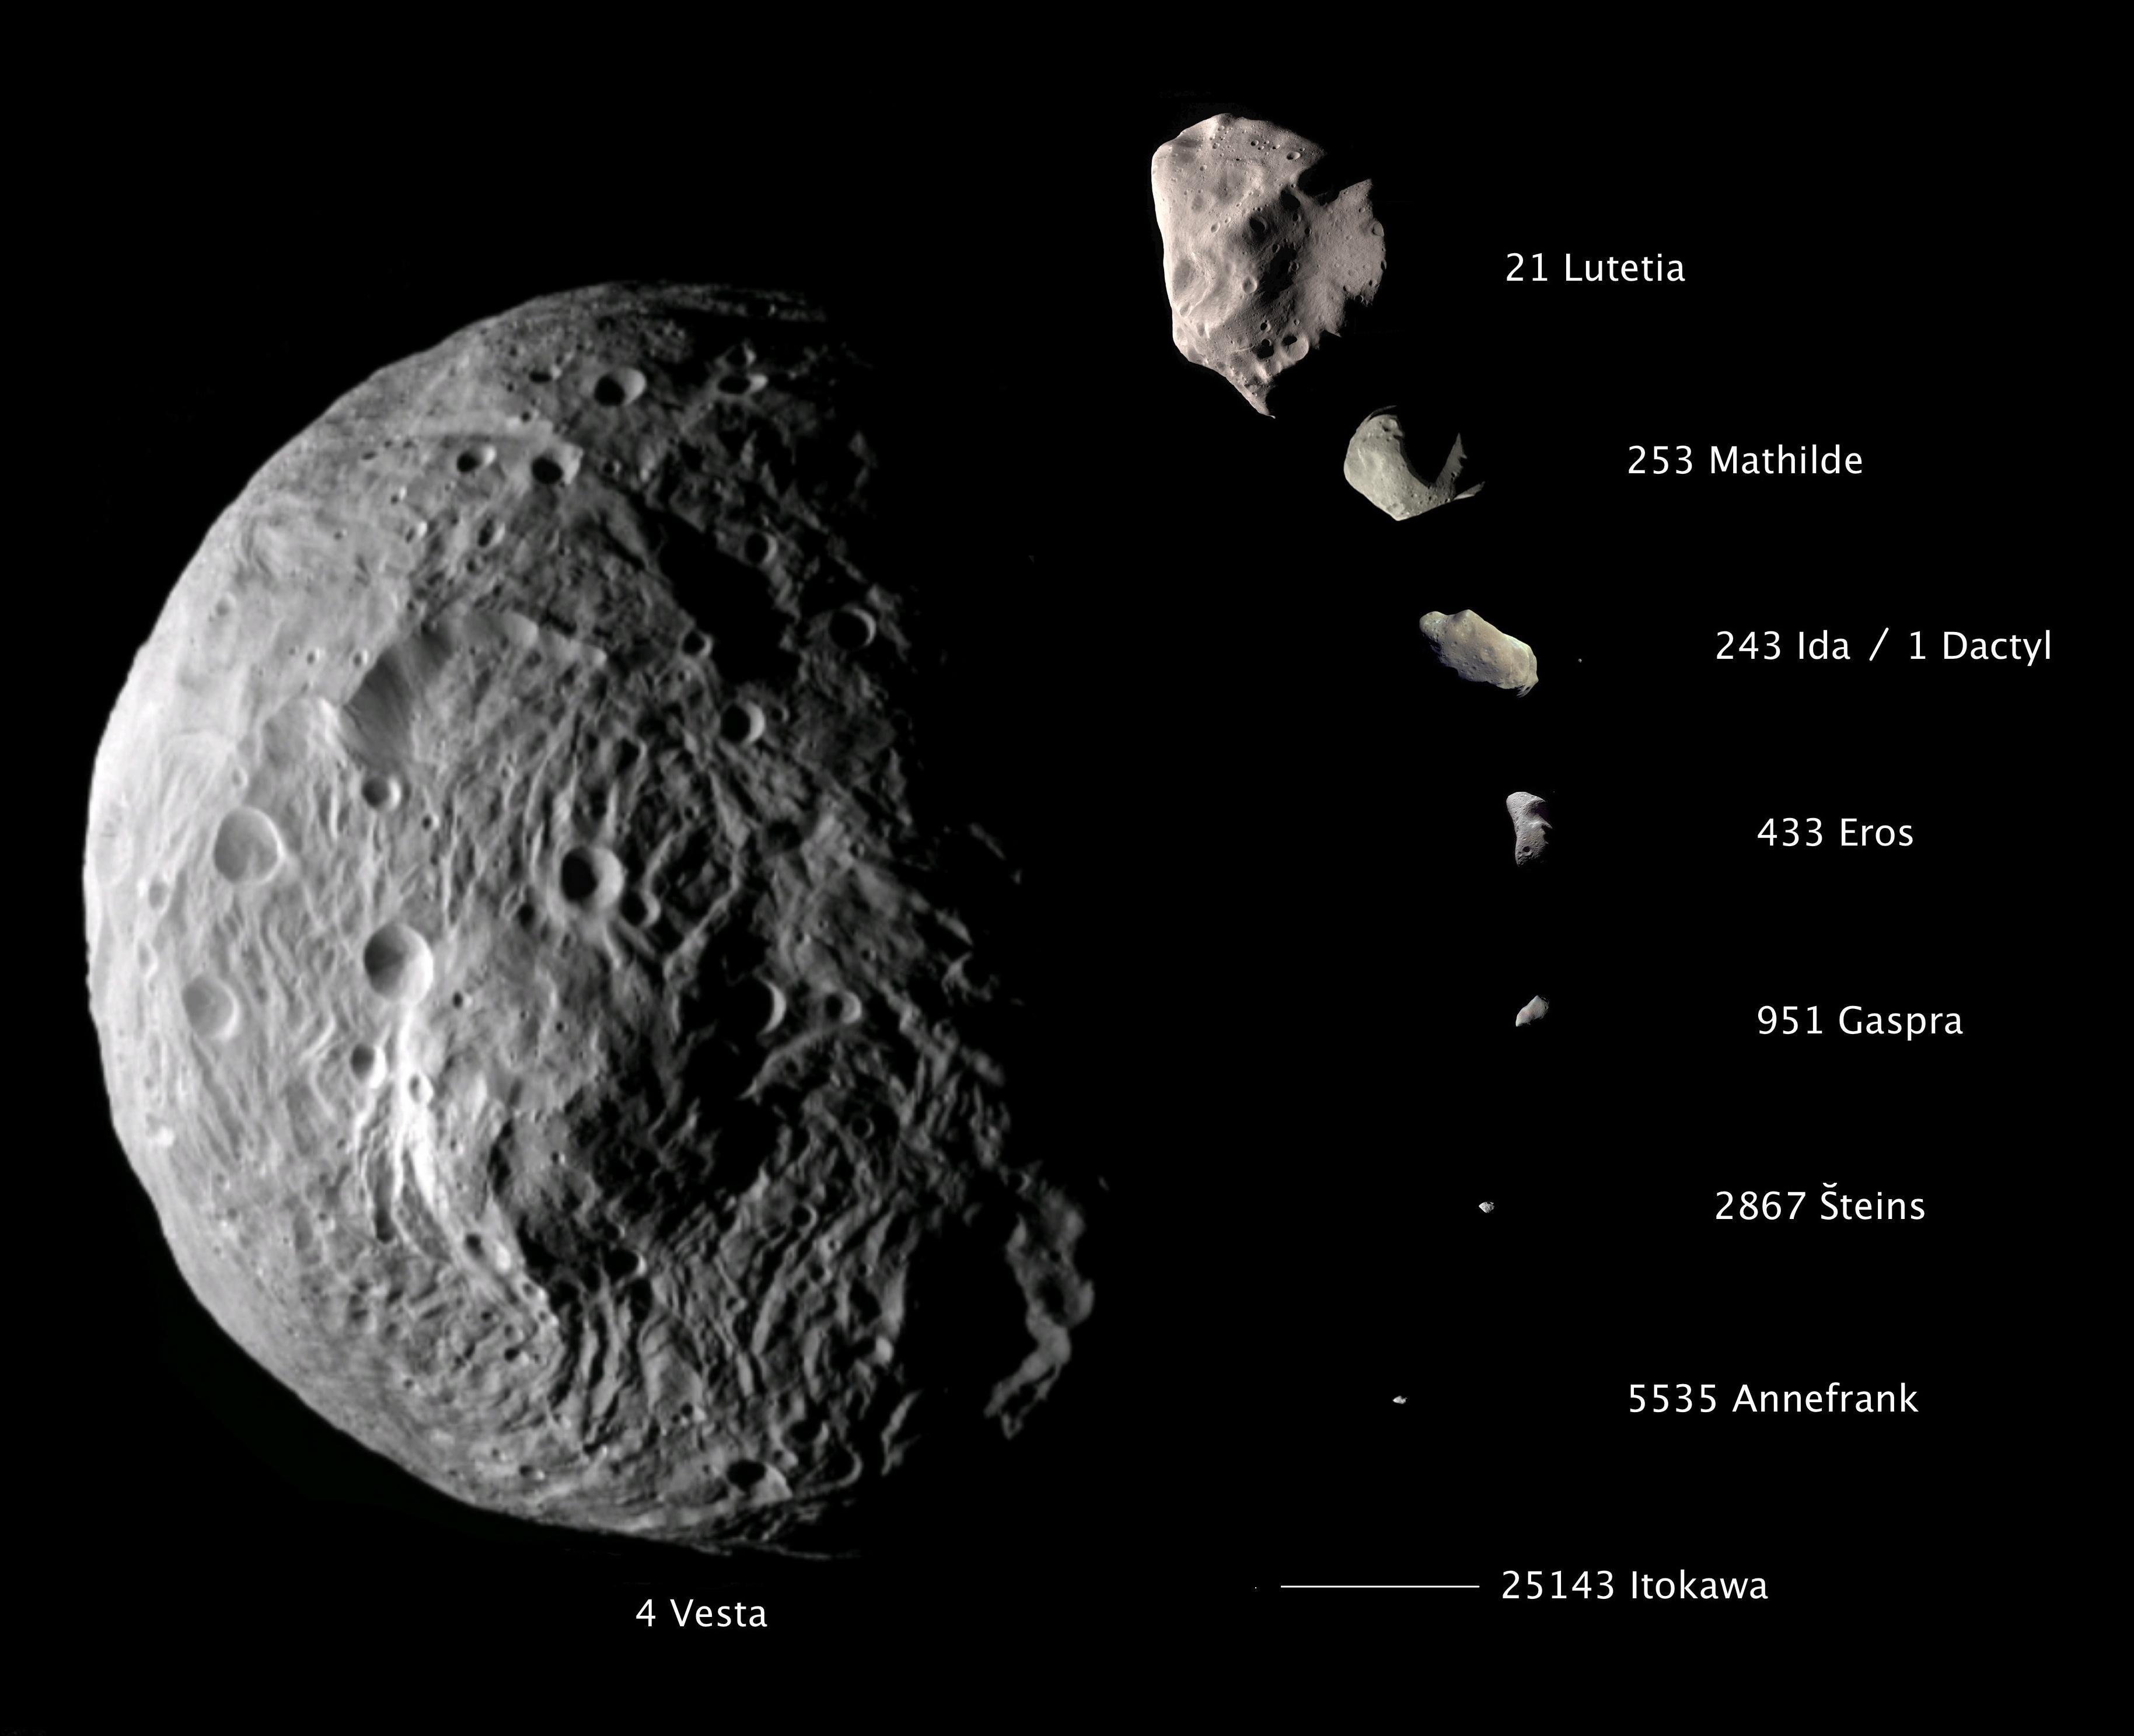 Астероид Гаспра (четвертый снизу) в сравнении с восемью другими малыми планетами. Монтаж изображений